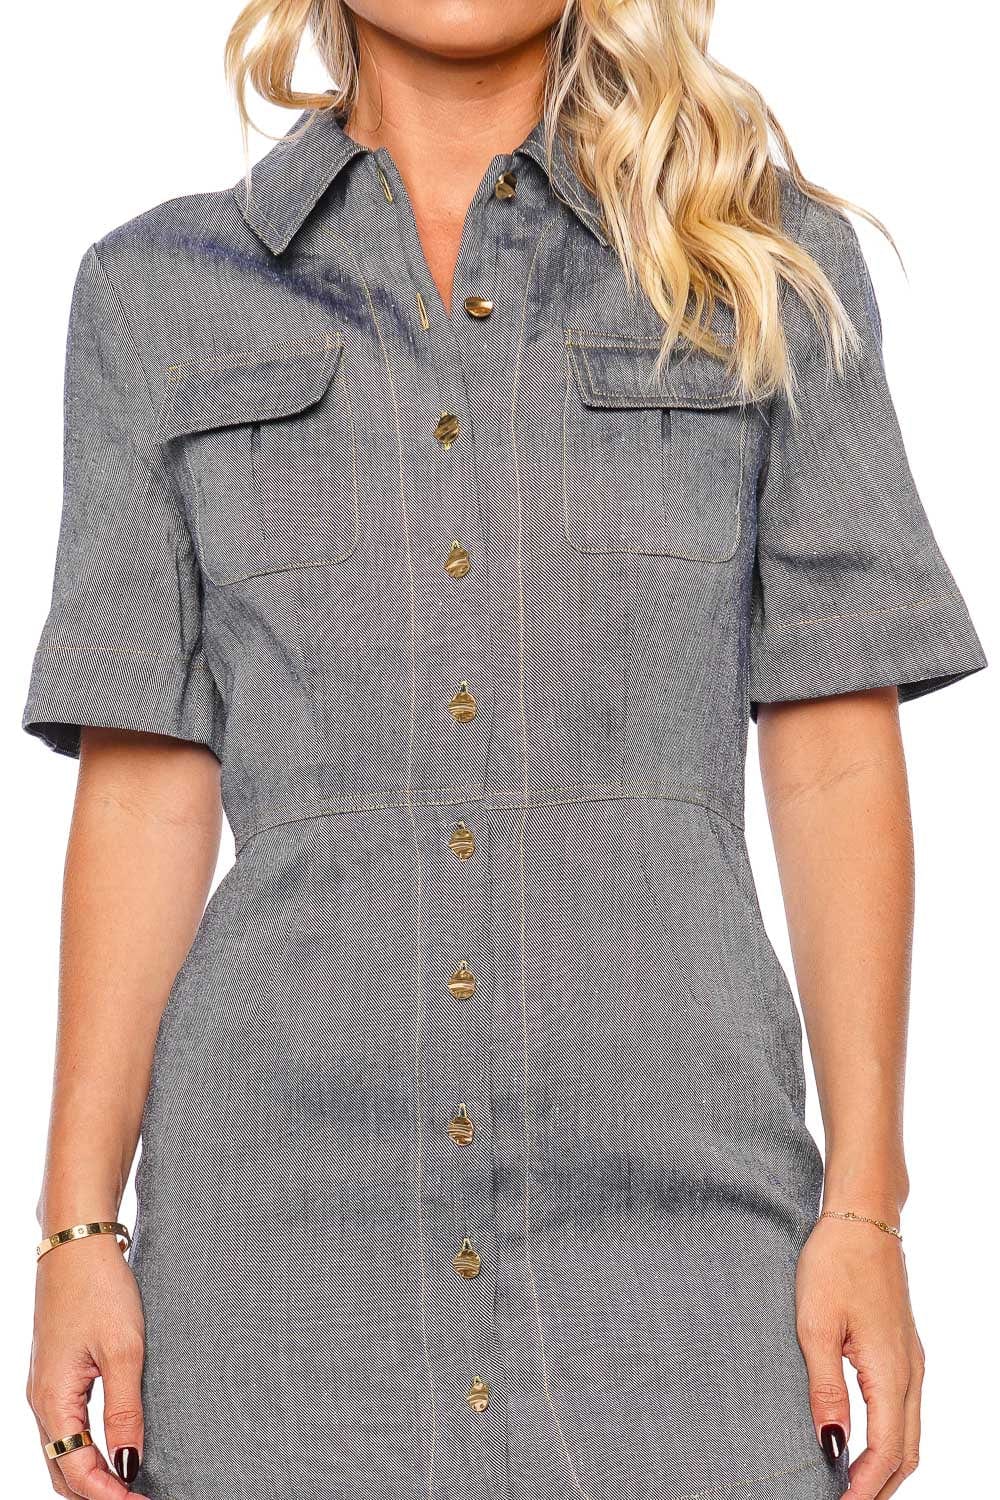 Matthew Bruch Cargo Button Up Mini Shirt Dress 24RES1083 D Denim